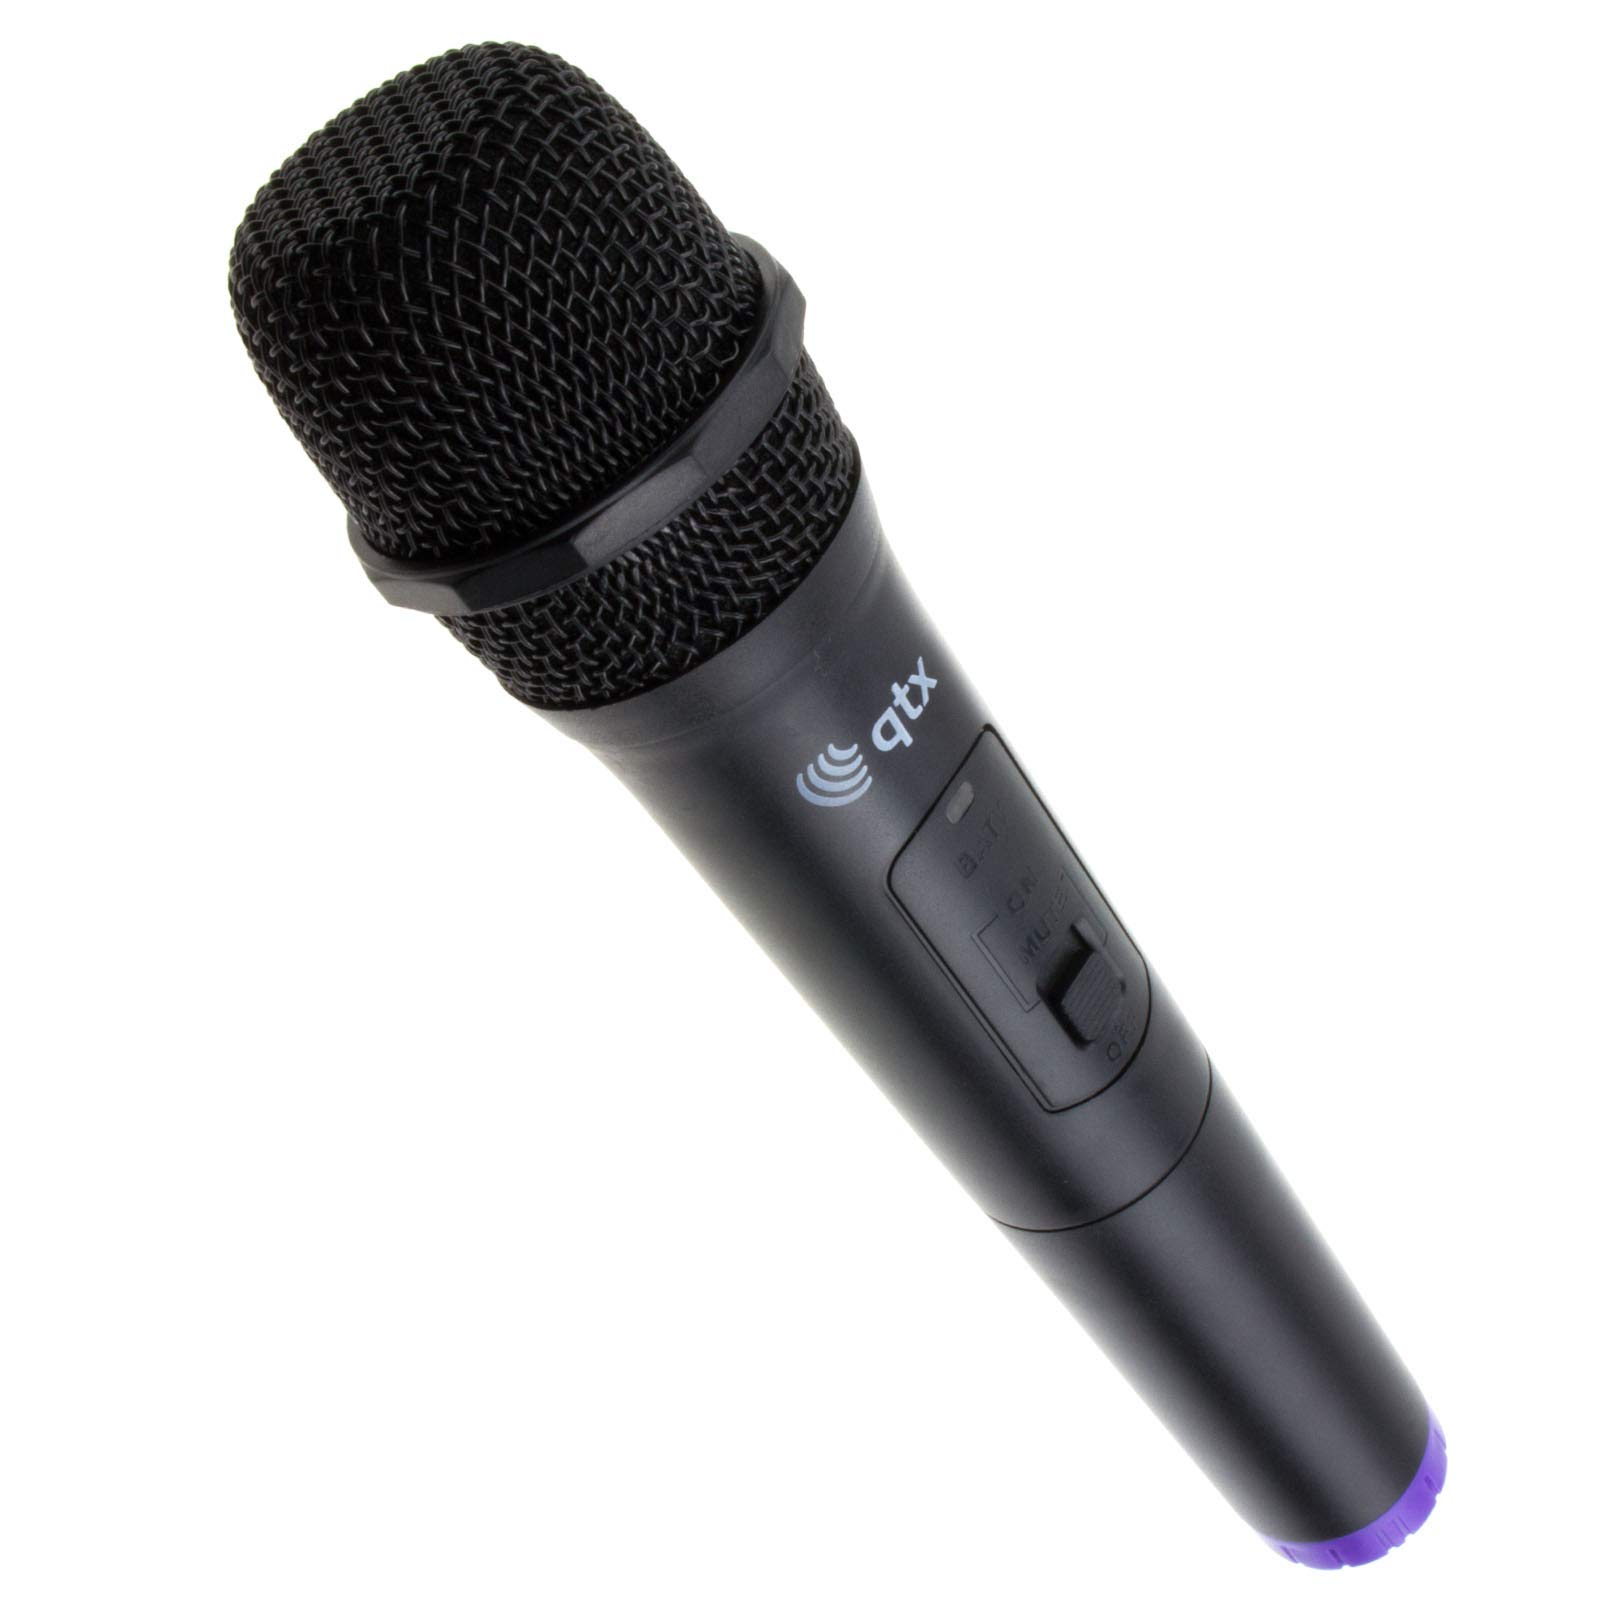 USB Kraft Wireless WLAN UHF Handheld Karoke/Singing Mikrofon Set 864.8MHz